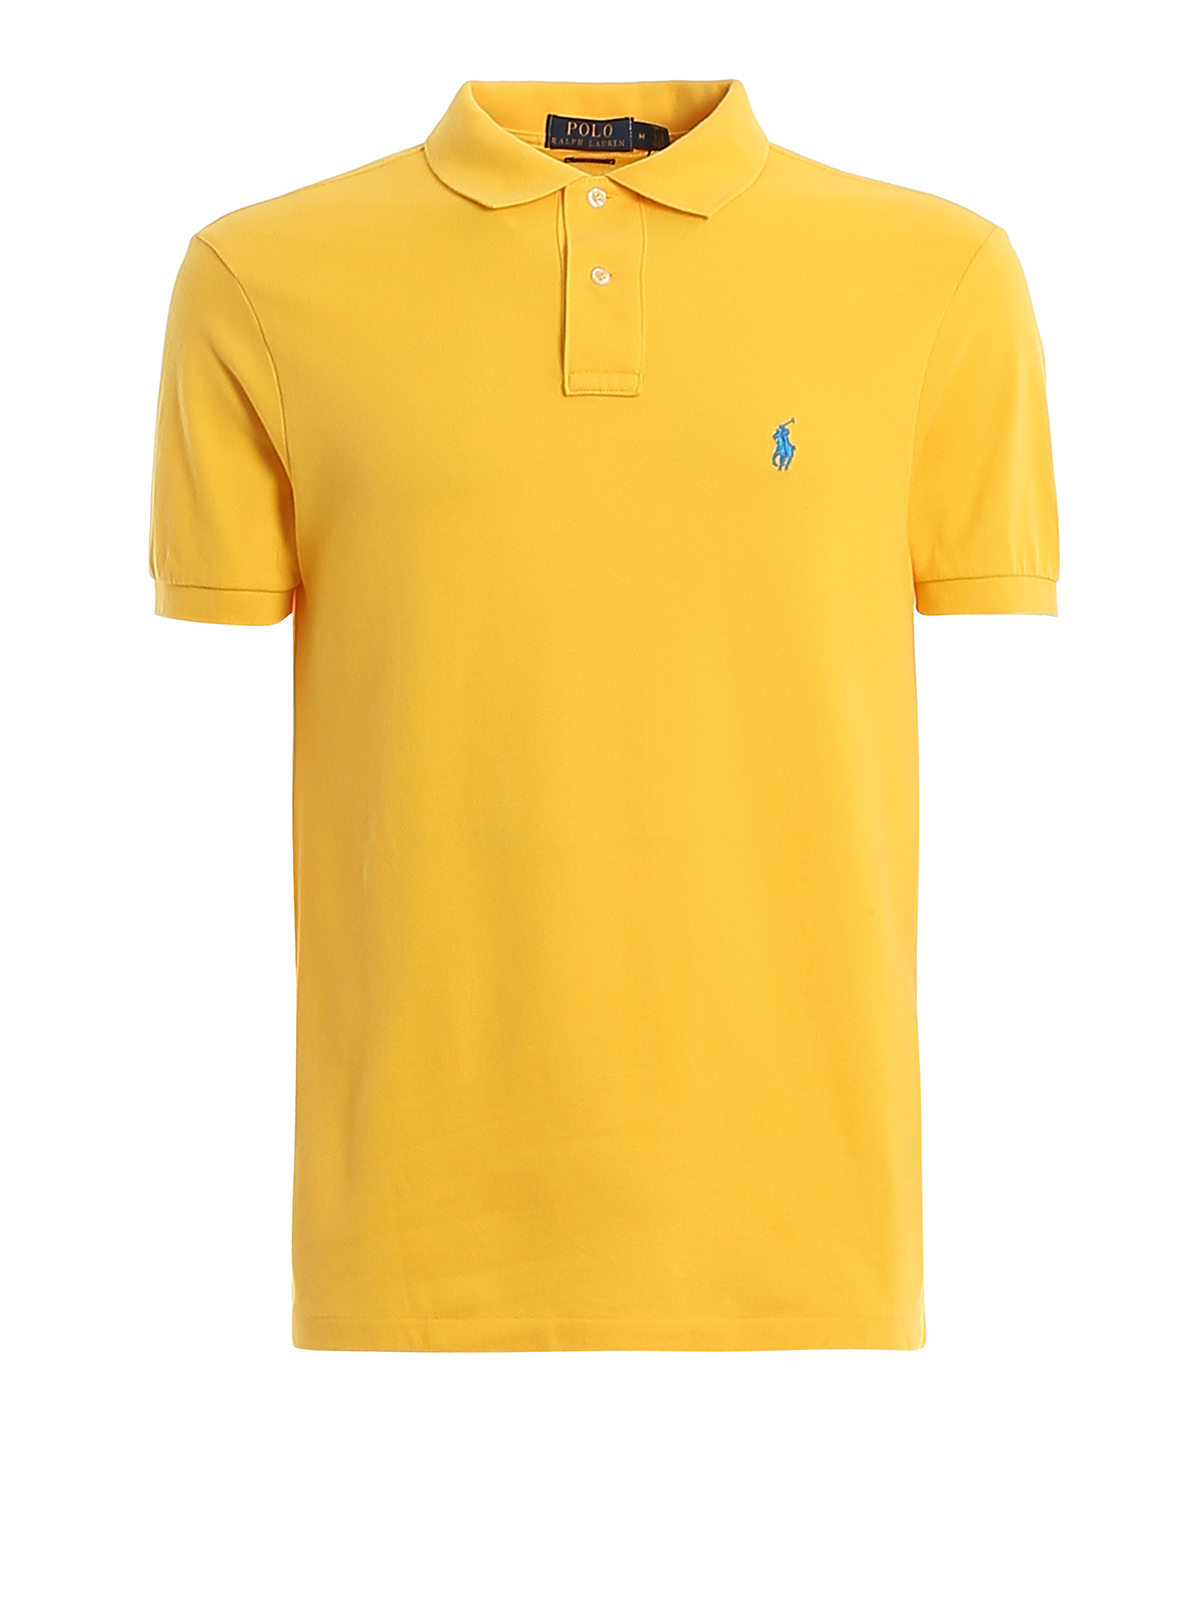 Polo Ralph Lauren Logo Embroidery Yellow Pique Polo Shirt